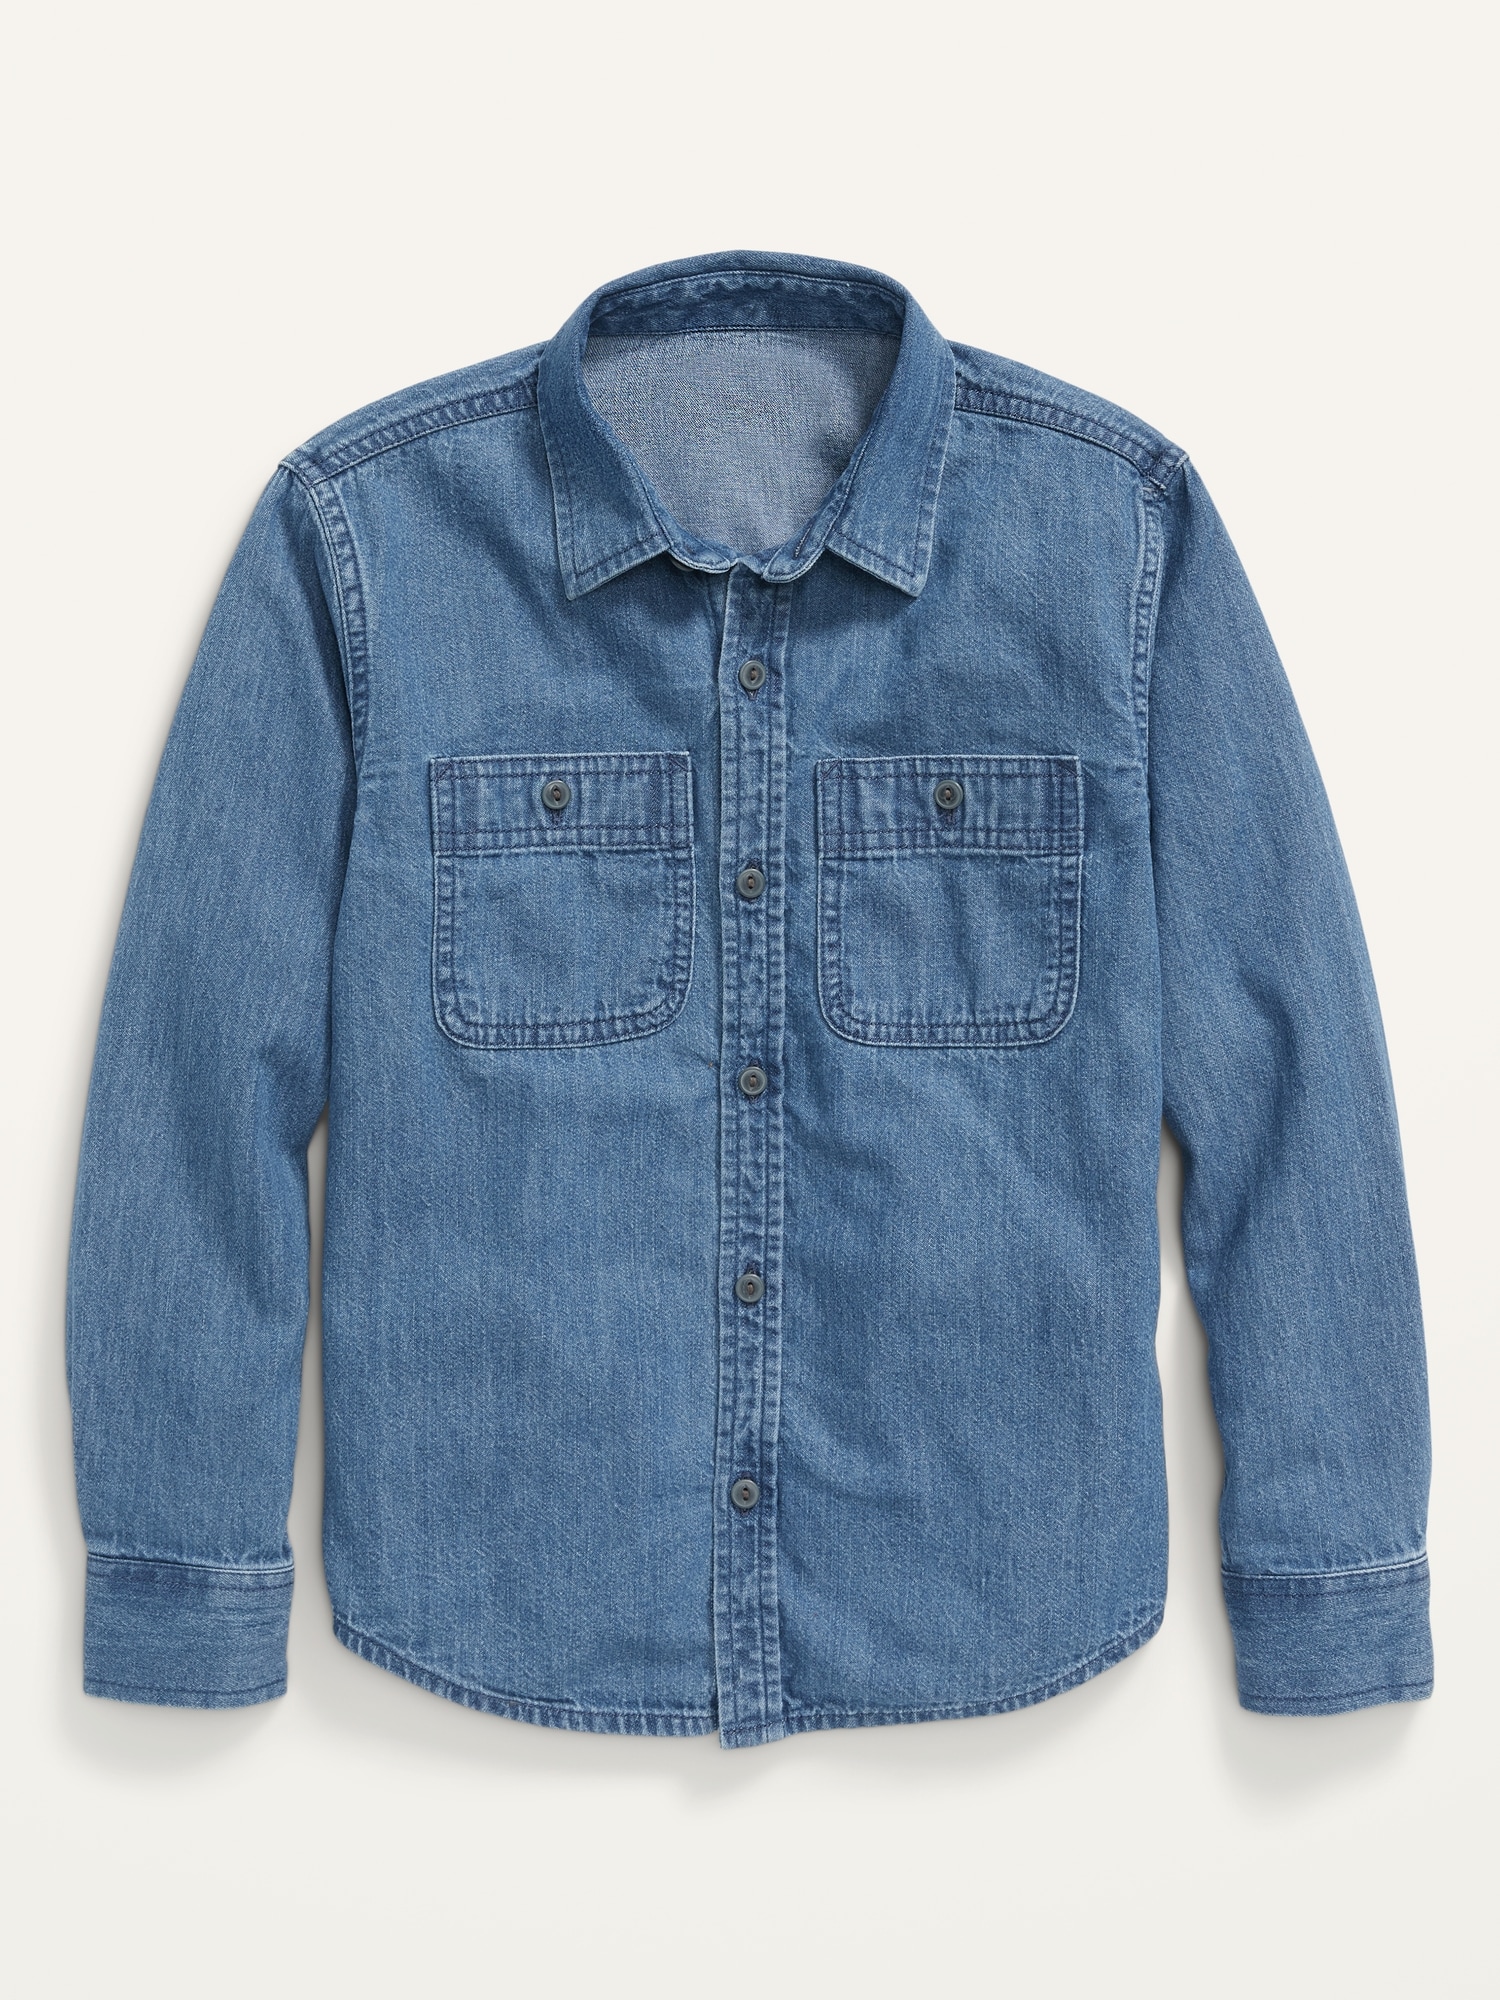 Men Denim Shirt Casual Western Jean Shirt Button Front Top Long Sleeve Top  Blue | eBay